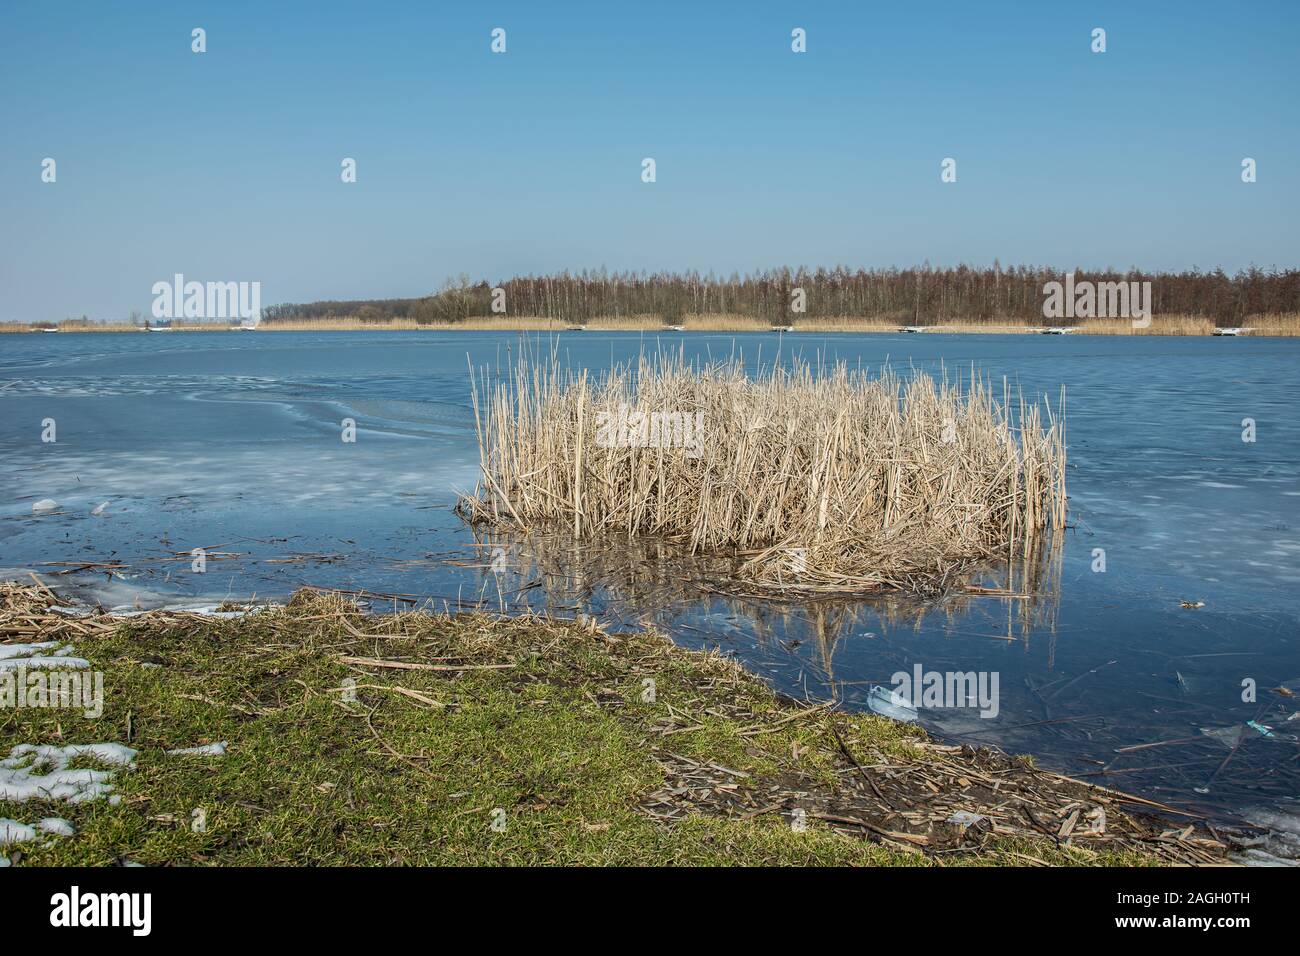 Grüne Gras am Rande eines zugefrorenen See und ein Büschel Schilf. Horizont und blauer Himmel Stockfoto